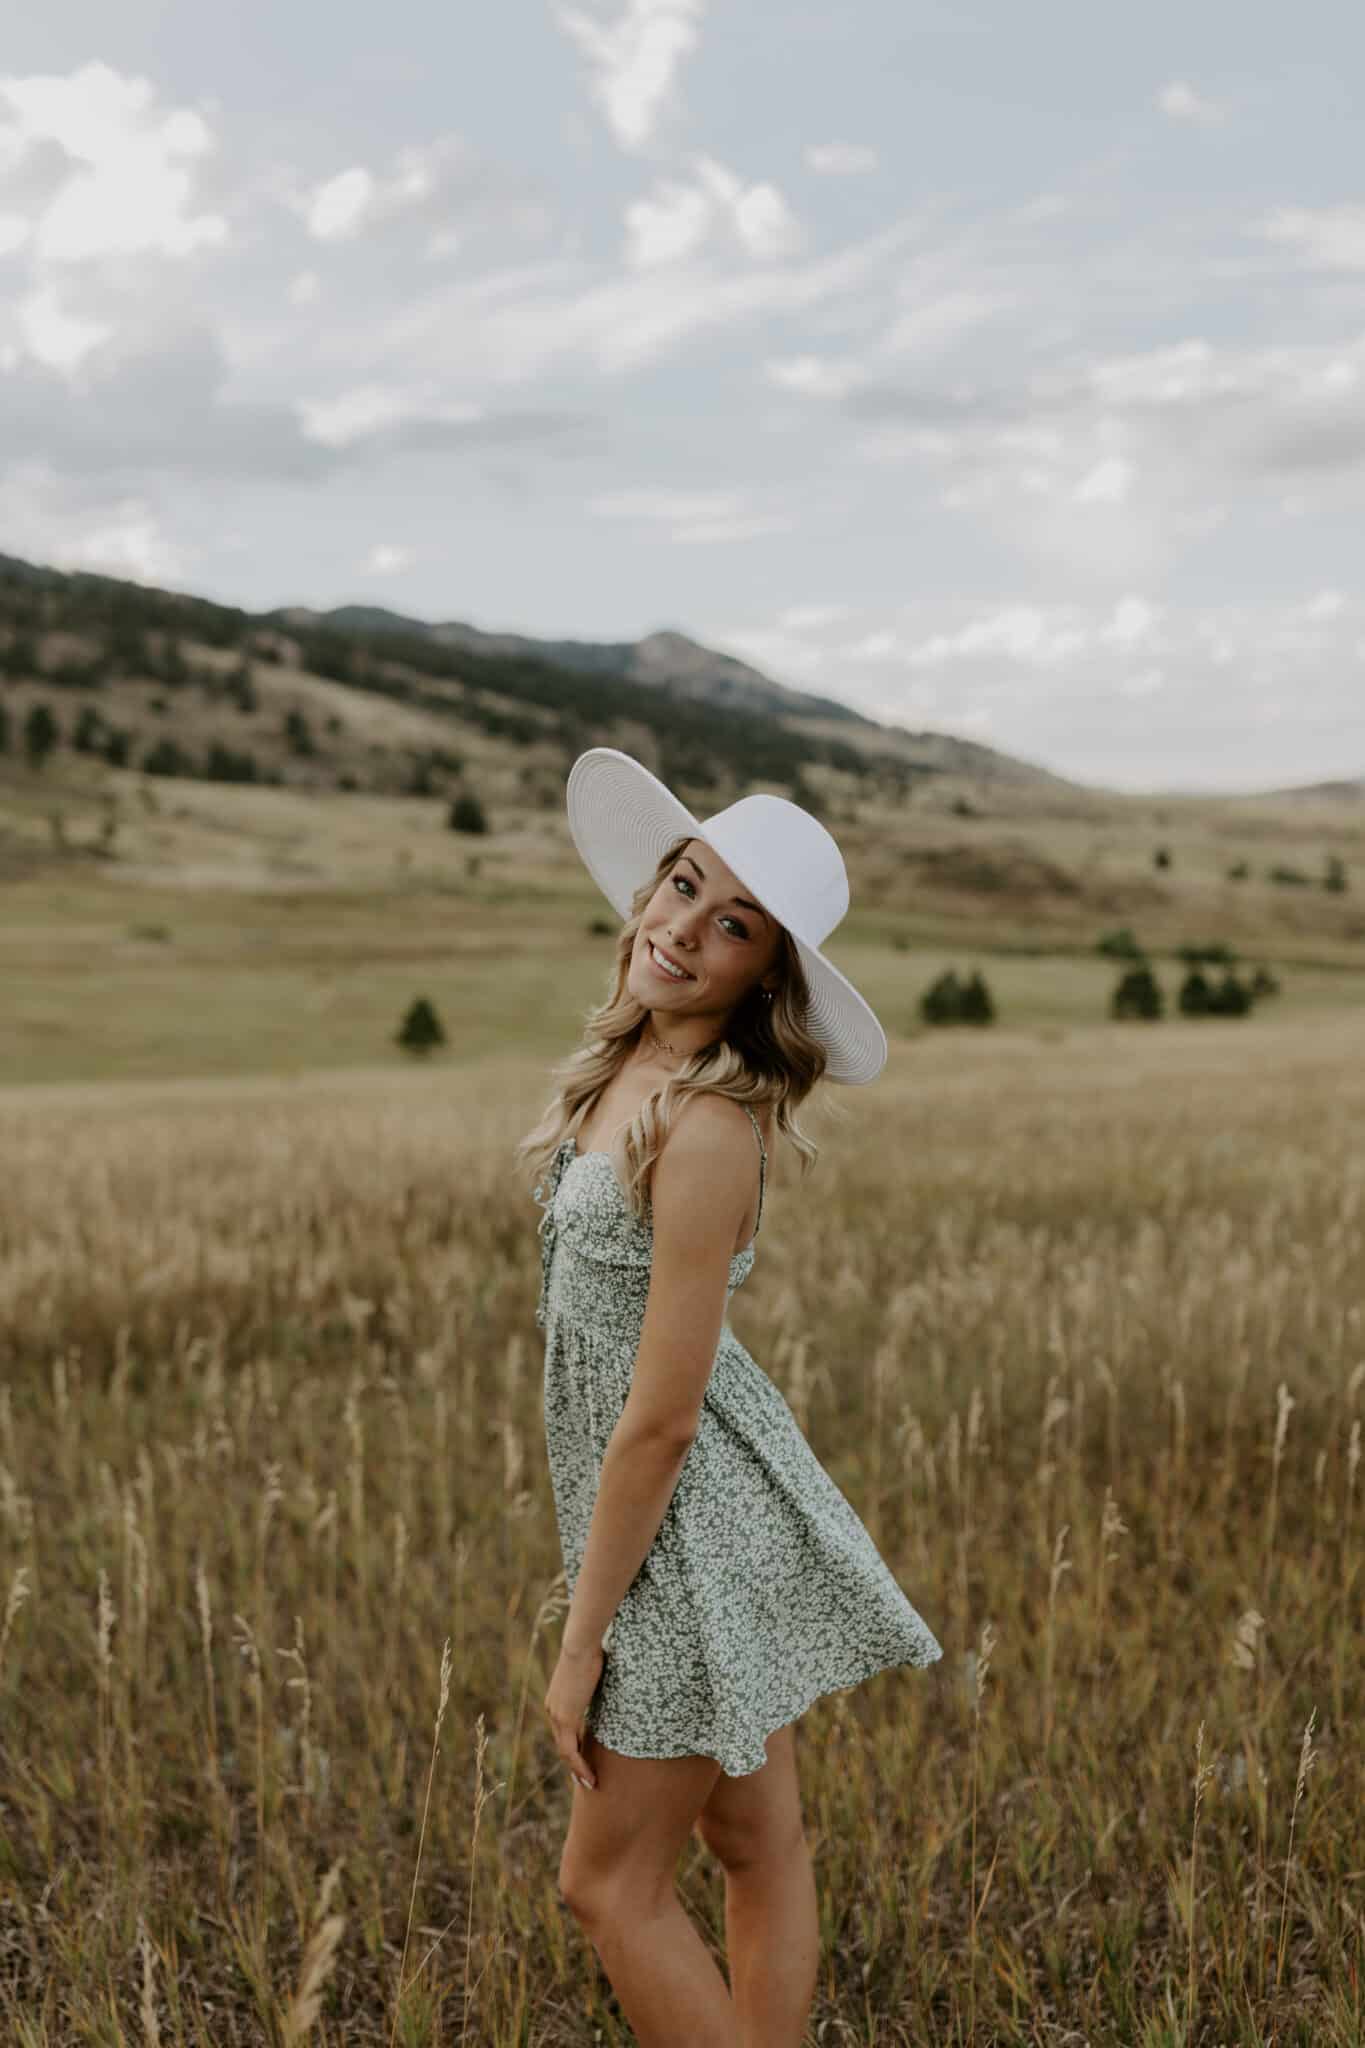 Lauren in a White Hat in a Field